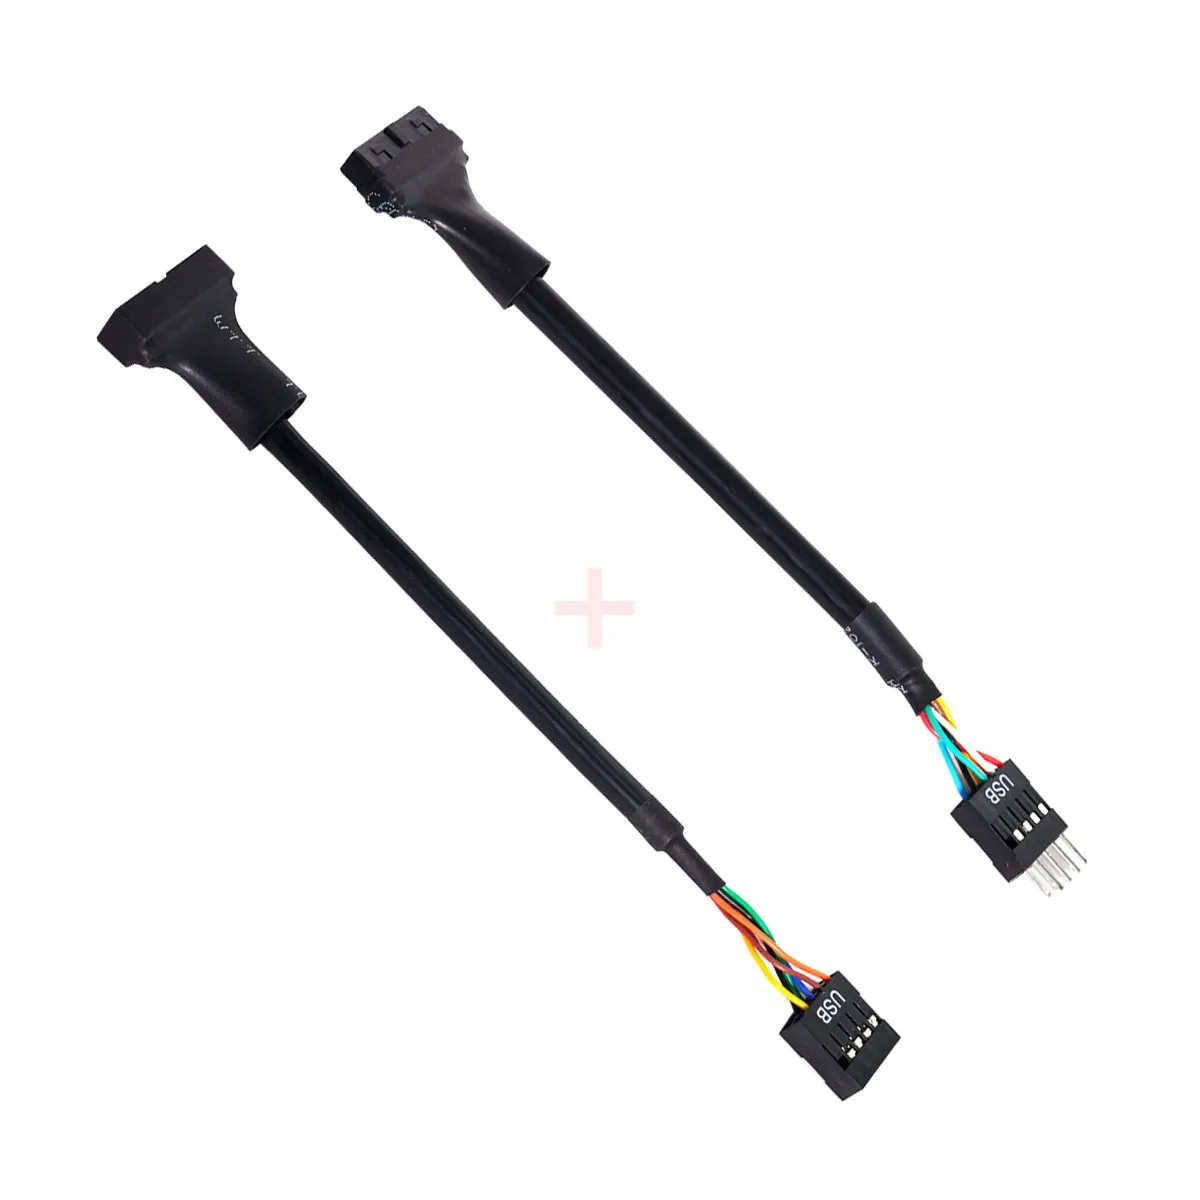 Chenyang 2 шт. USB 3.0 20-контактный разъем в корпусе гнездо к USB 2.0 9-контактный кабель двусторонний для материнской платы